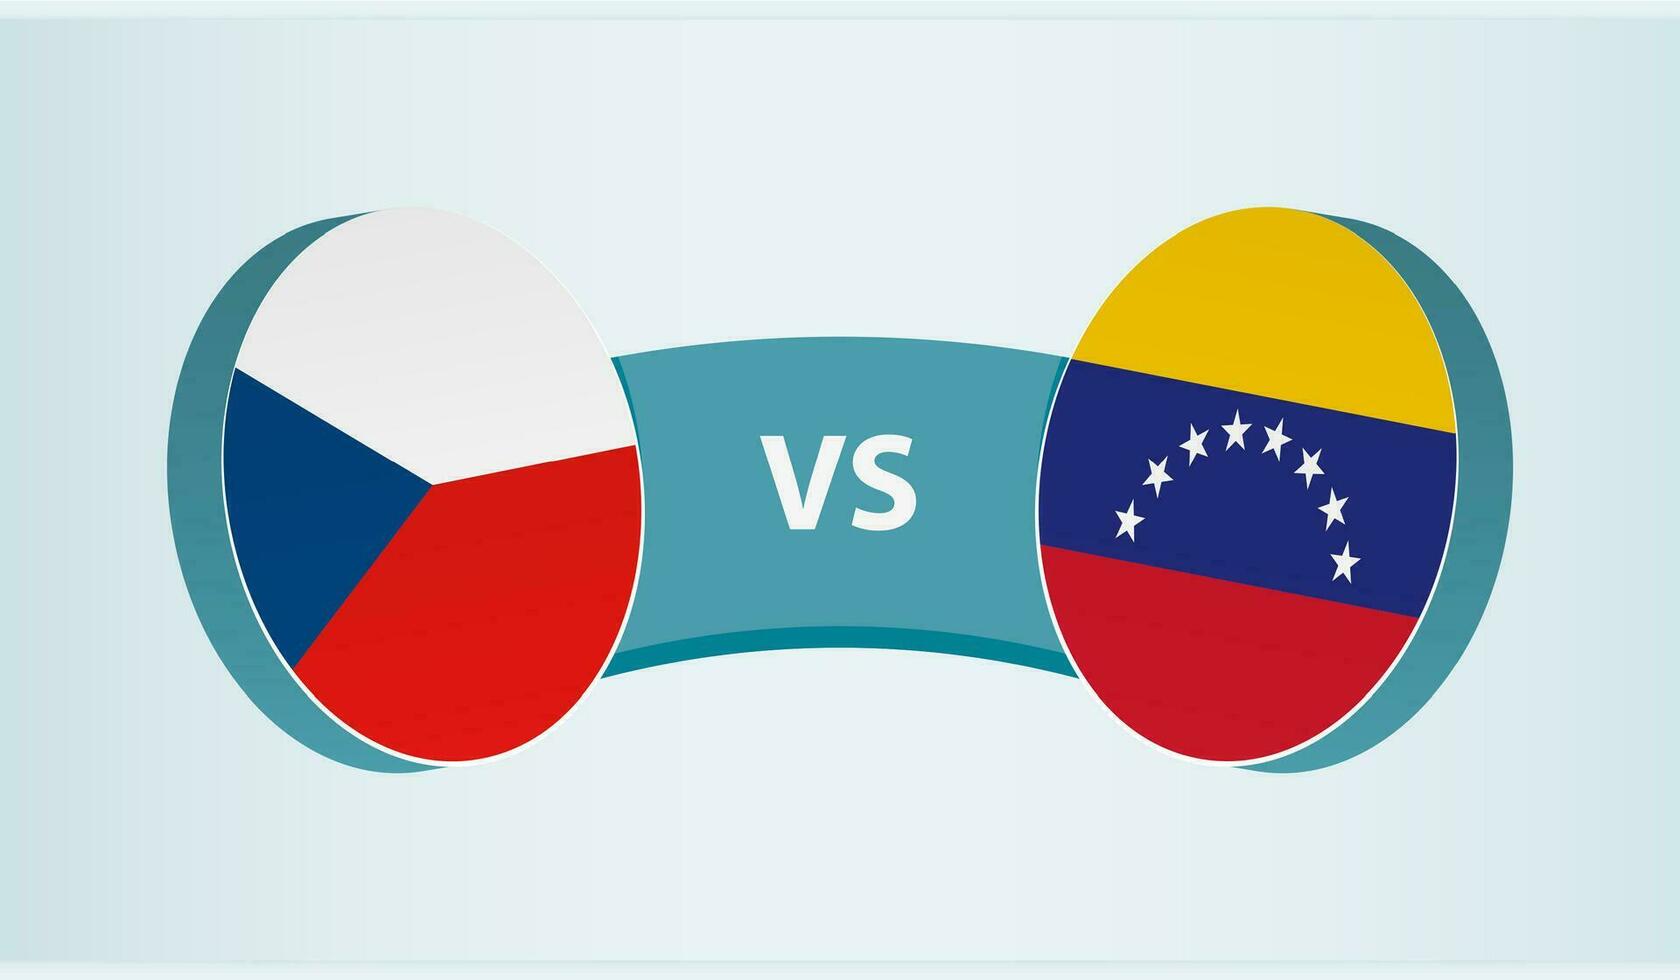 tcheco república versus Venezuela, equipe Esportes concorrência conceito. vetor